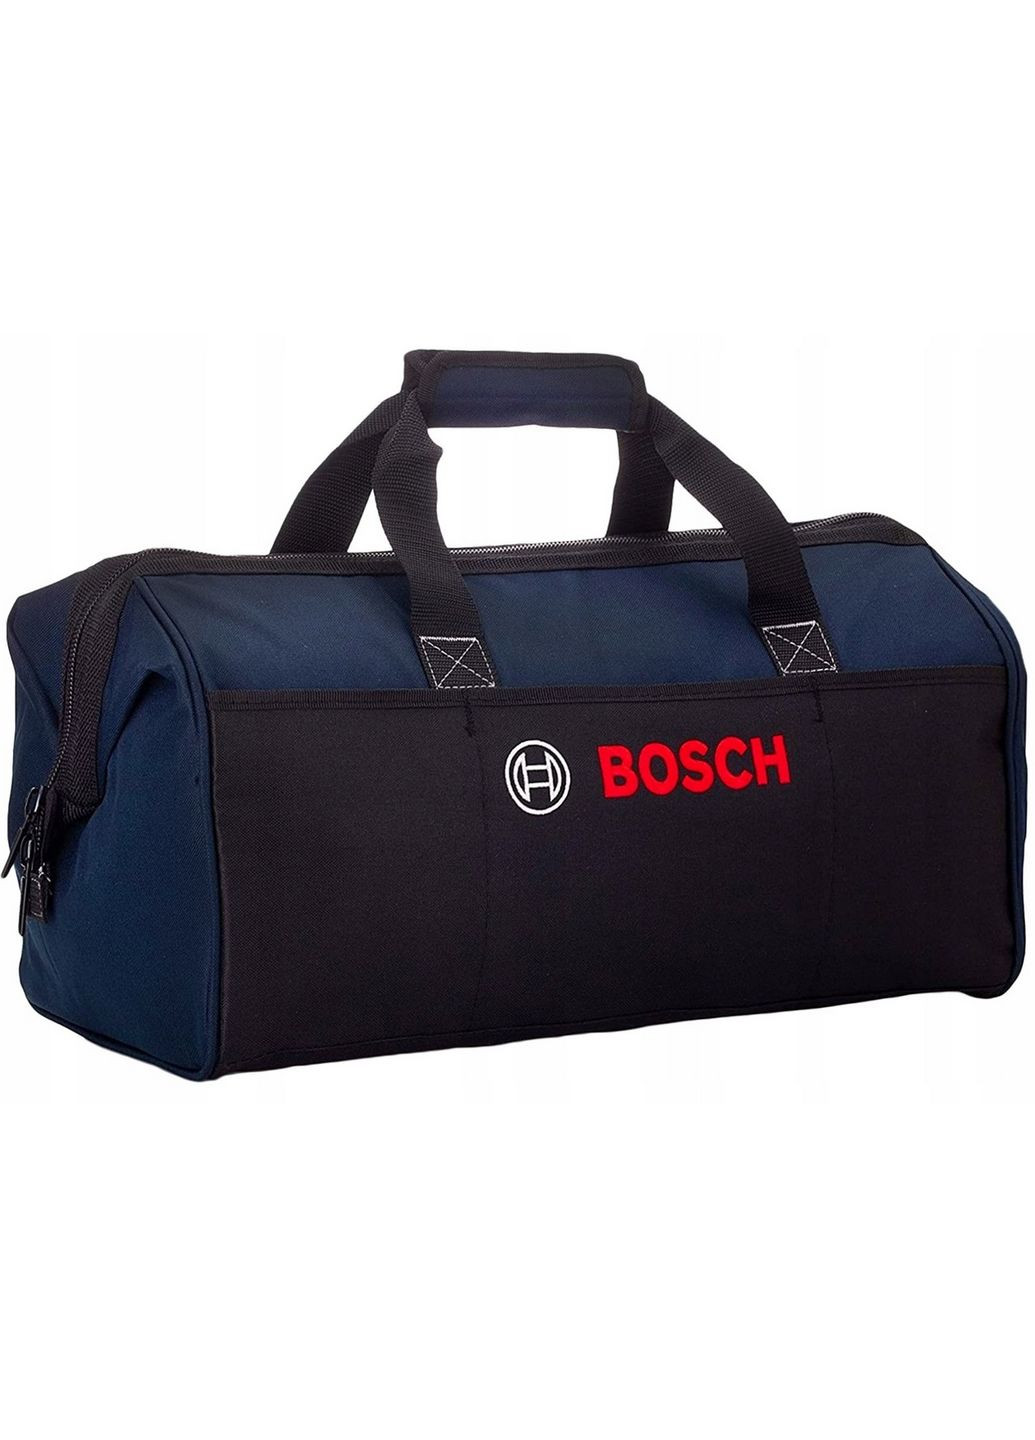 Робоча сумка для інструментів 47х28х28 см Bosch (289366374)